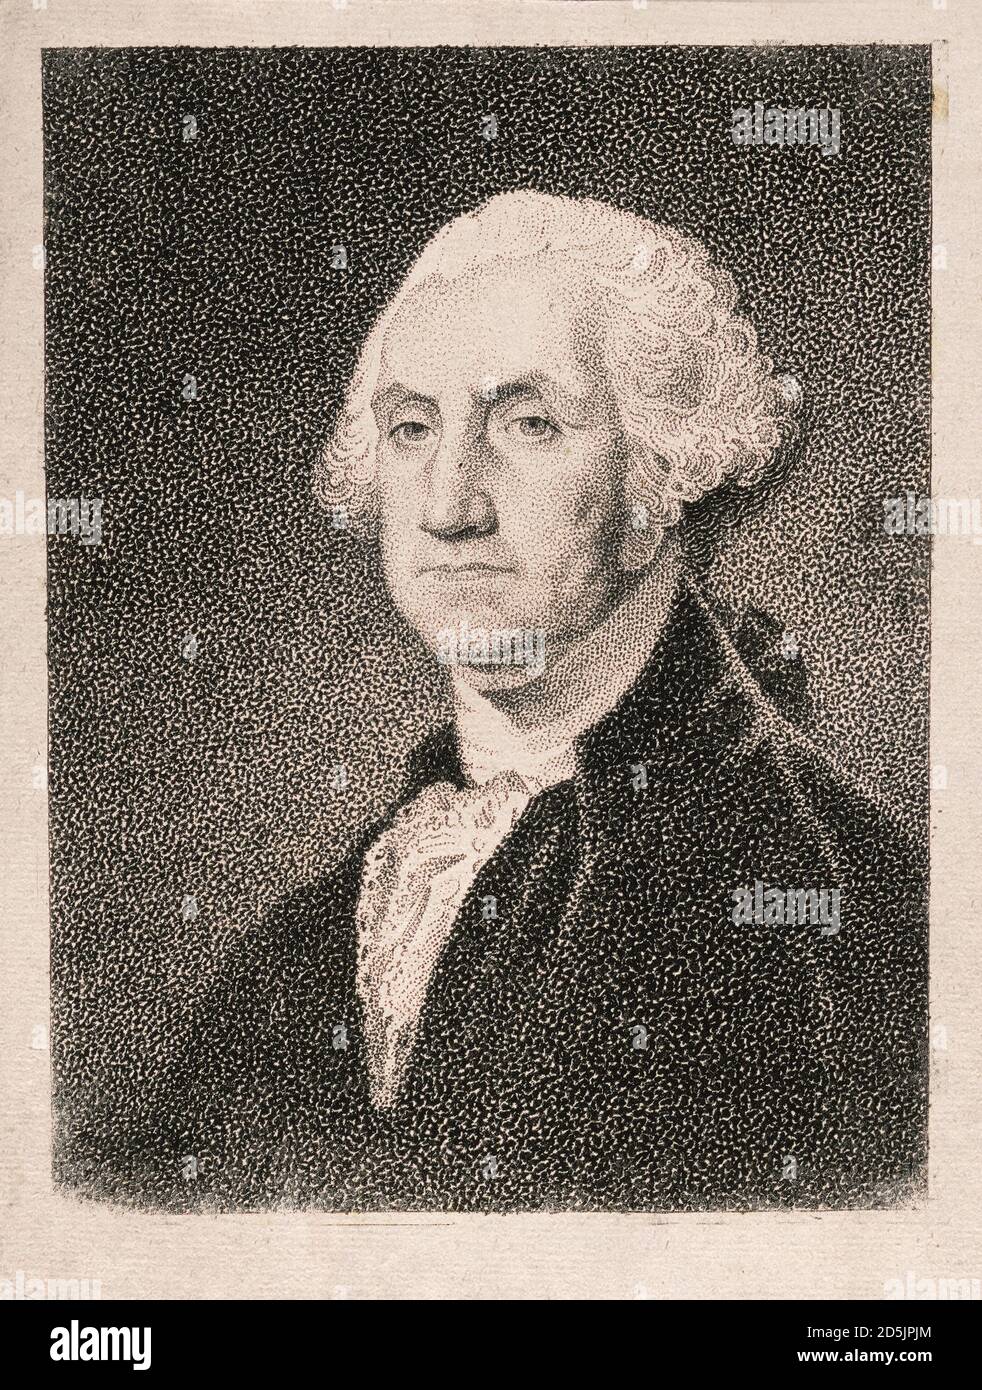 Porträt von Präsident George Washington. George Washington (1732 – 1799) war ein amerikanischer politischer Führer, Militärgeneral, Staatsmann und Gründer f Stockfoto